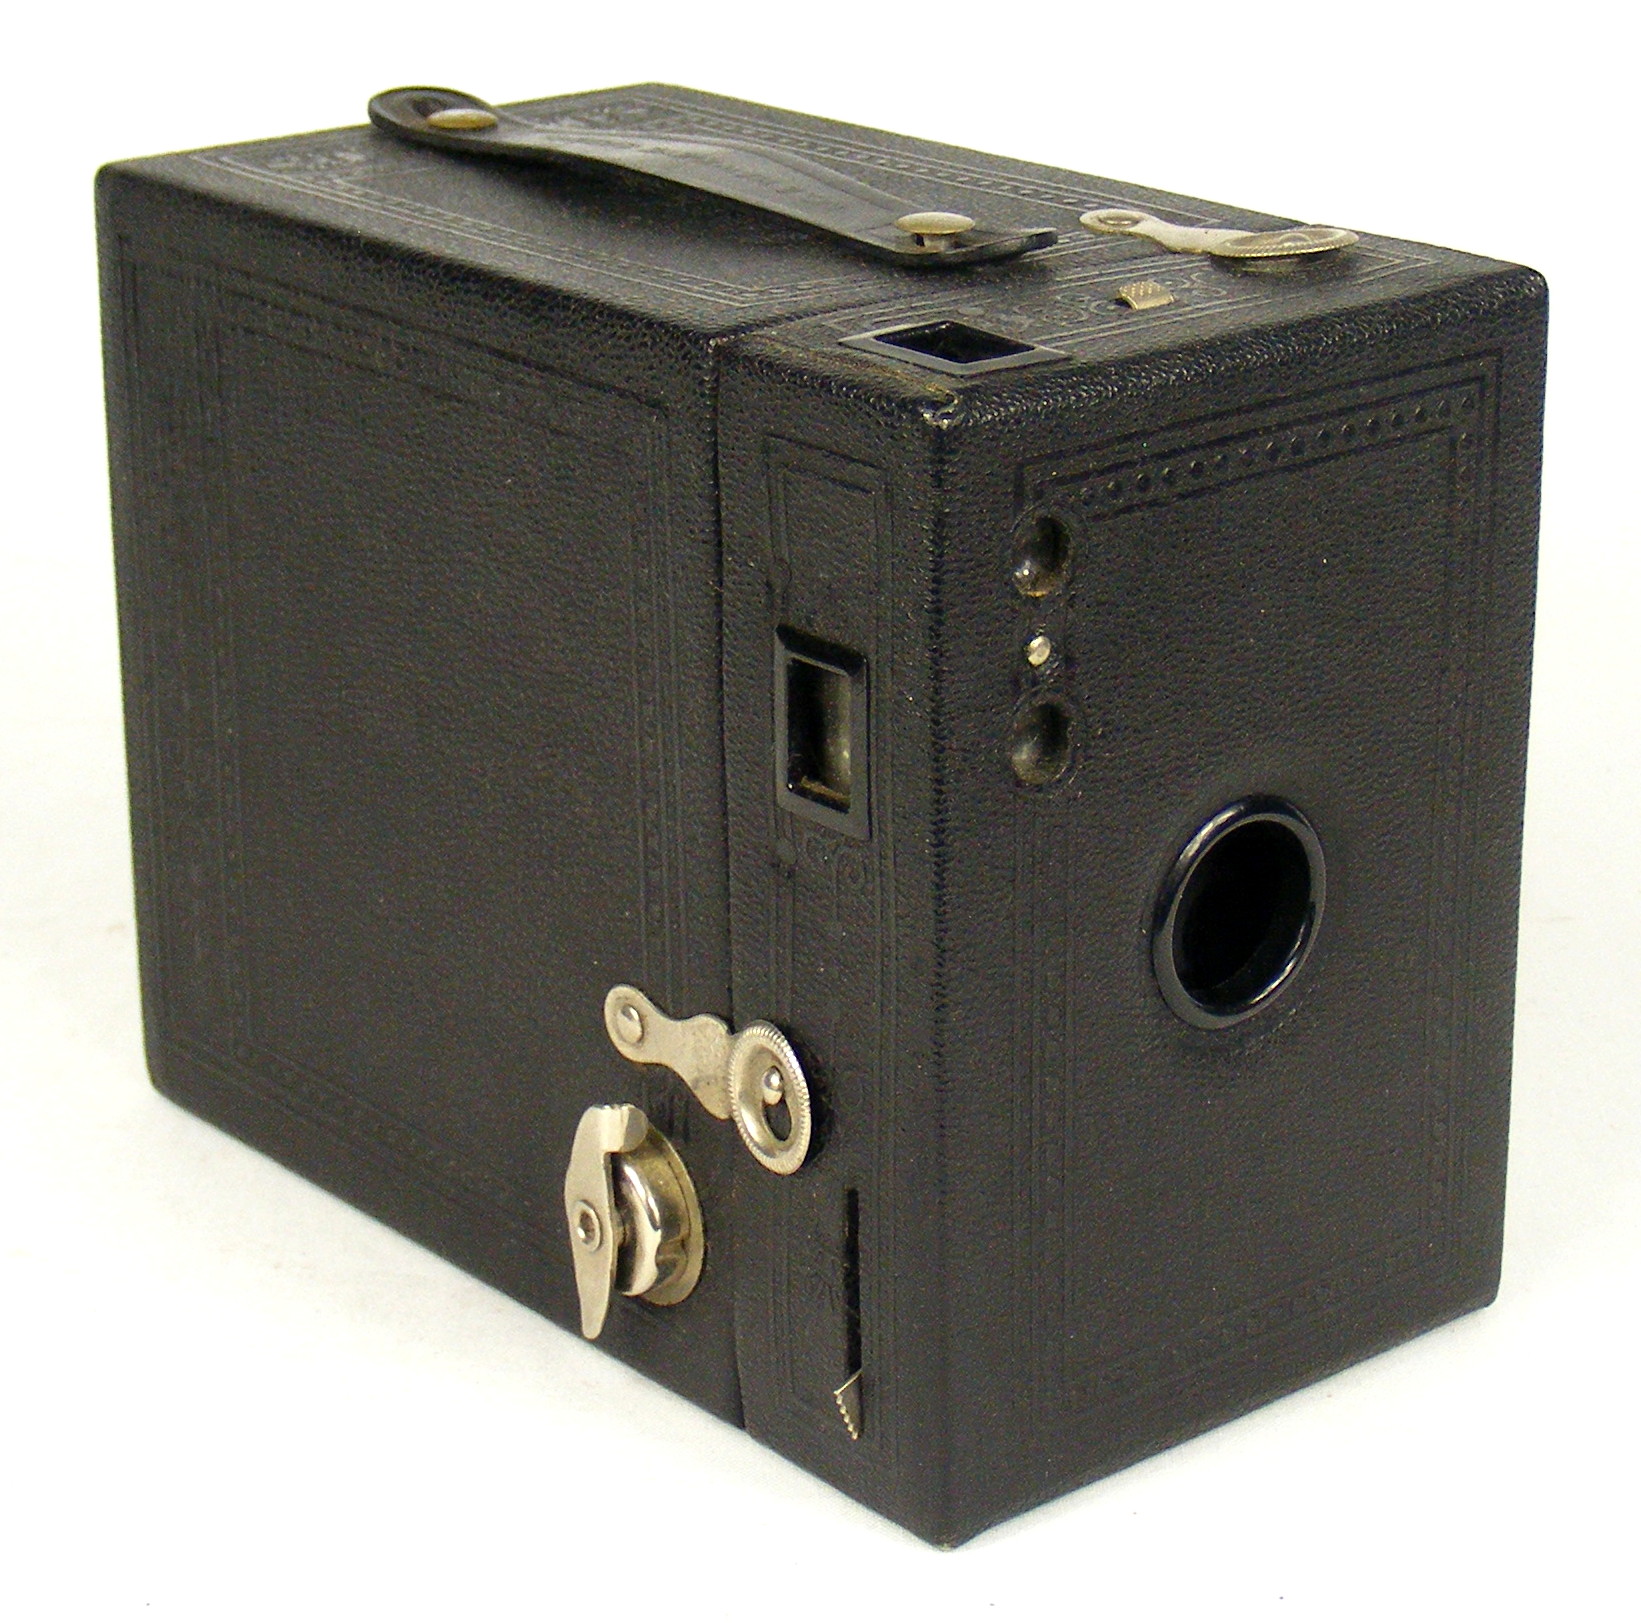 Image of No 2 Hawk-Eye Special box camera